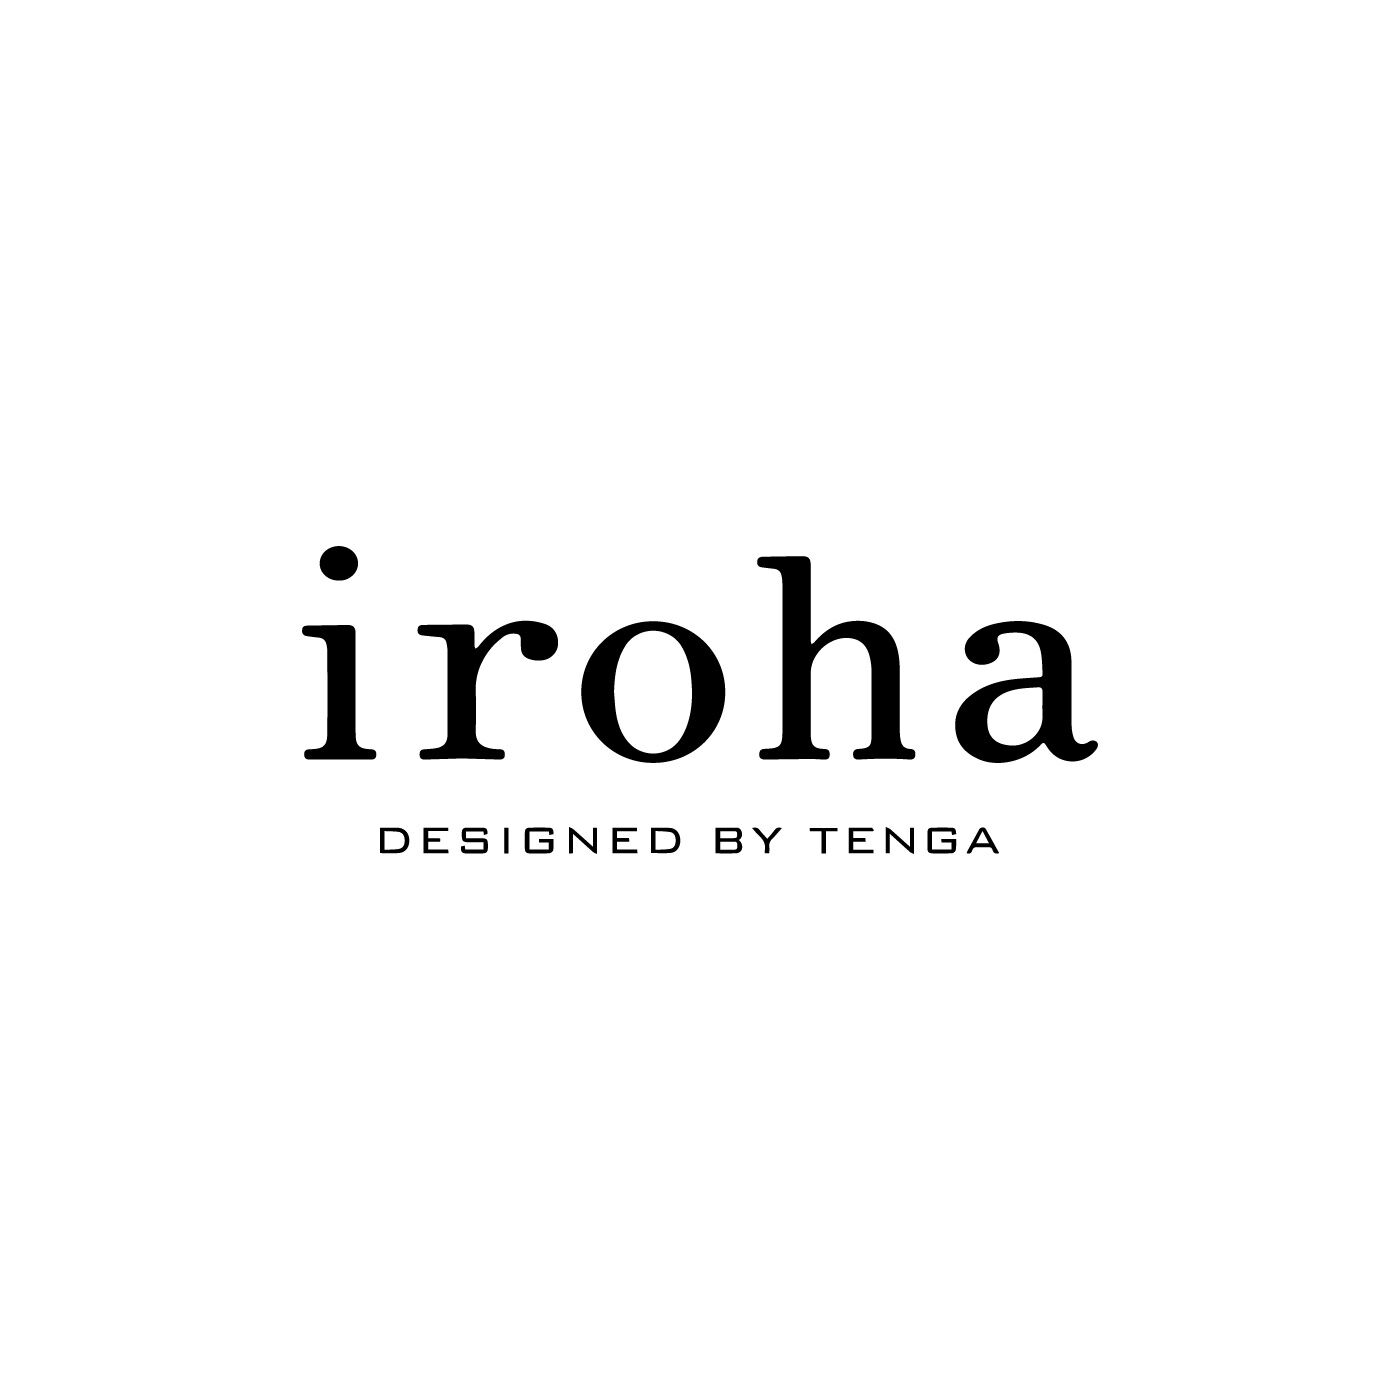 フェリシモコレクション|iroha　RIN＋　うめひすい|寝る前にパックをするように、セルフケアのひとつとして、からだが求める「気持ちよさ」に応えることは、もっと大切ににしてもいいこと。そんな思いで2013年3月から「iroha」はスタートしました。